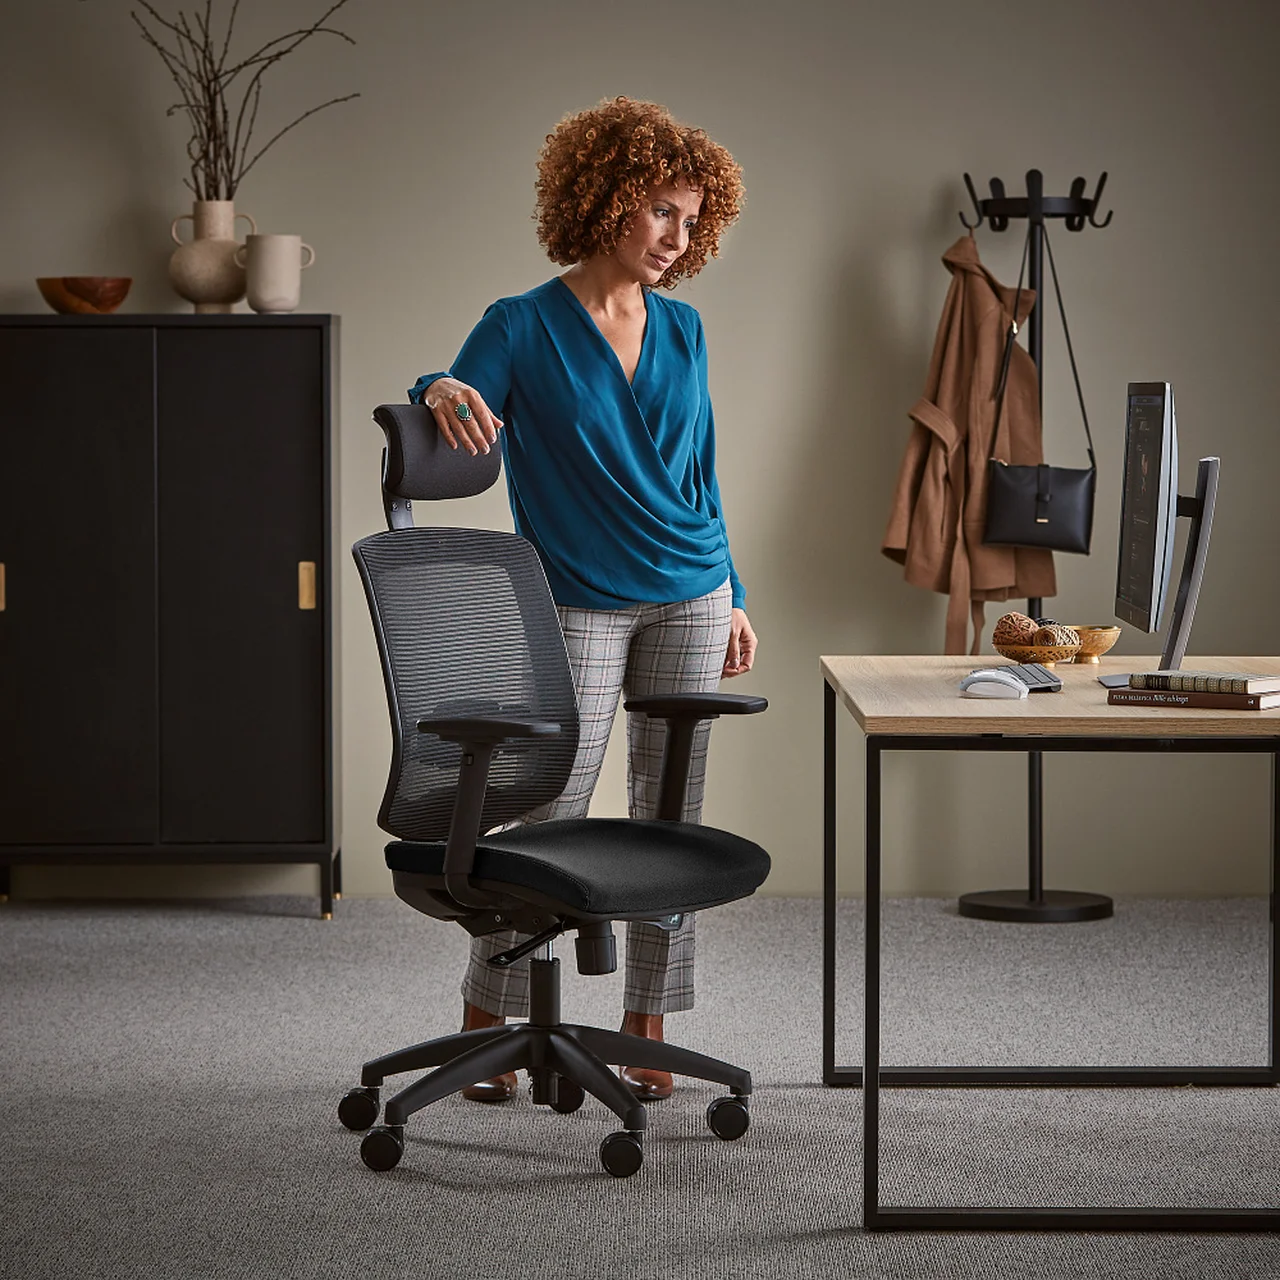 Domowe biuro – wygoda, zdrowie i efektywna praca